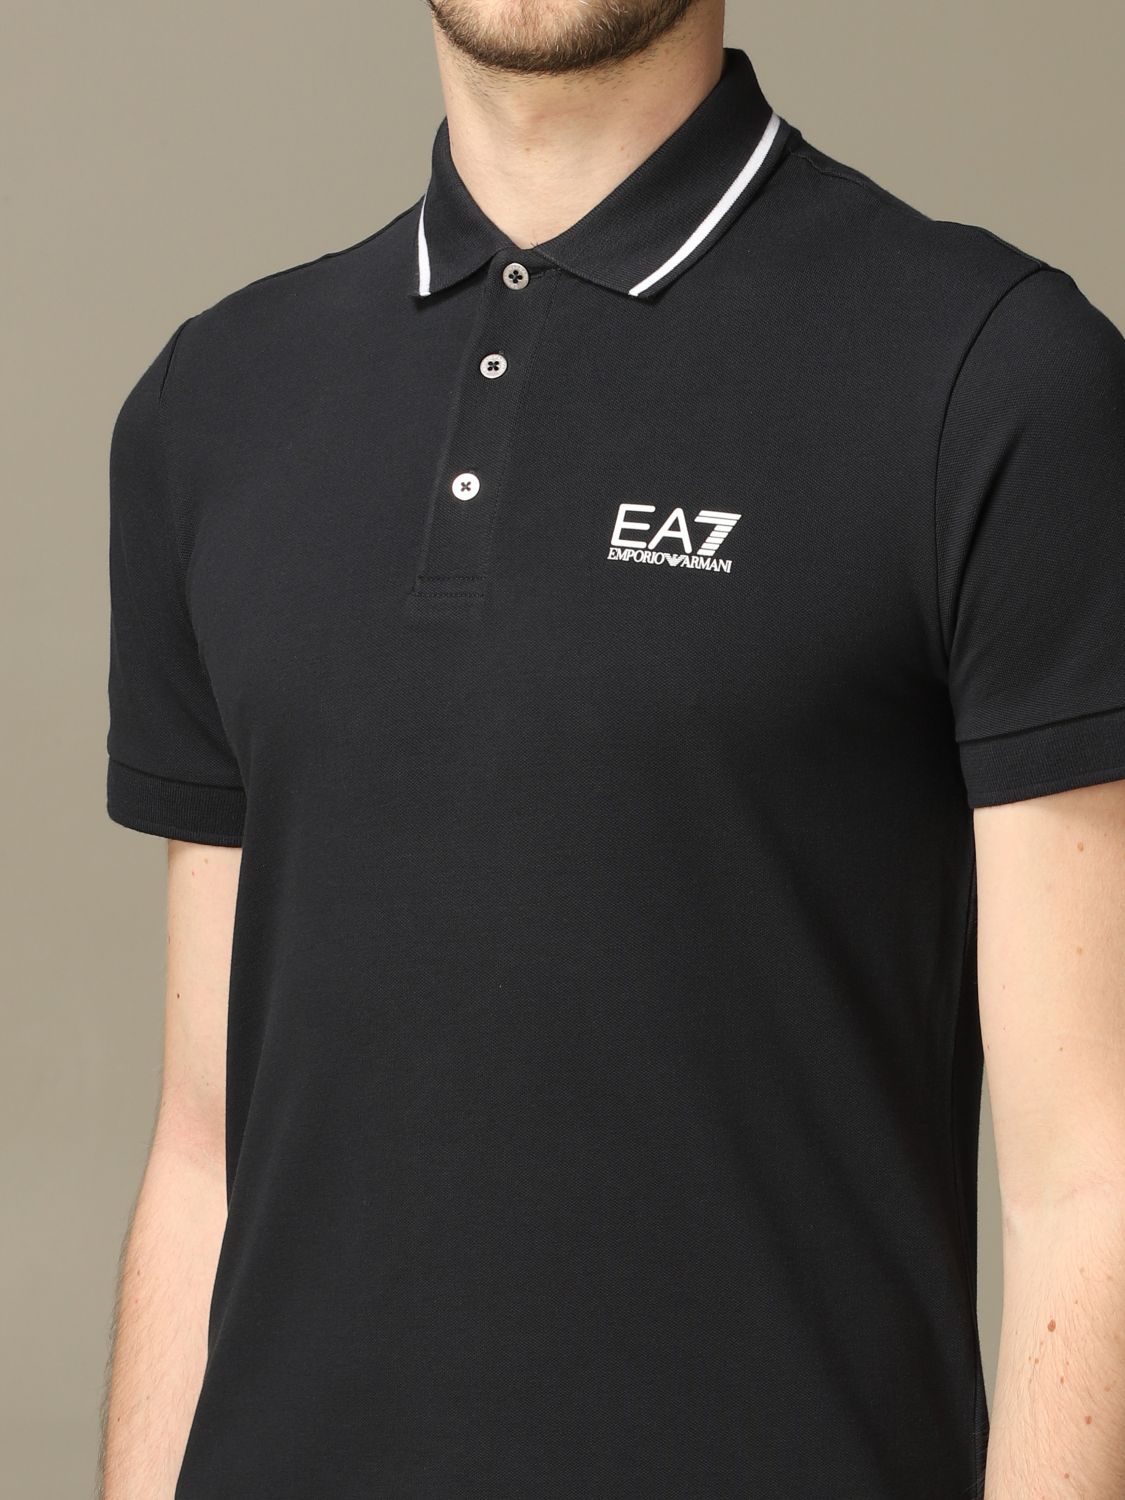 ea7 polo shirt